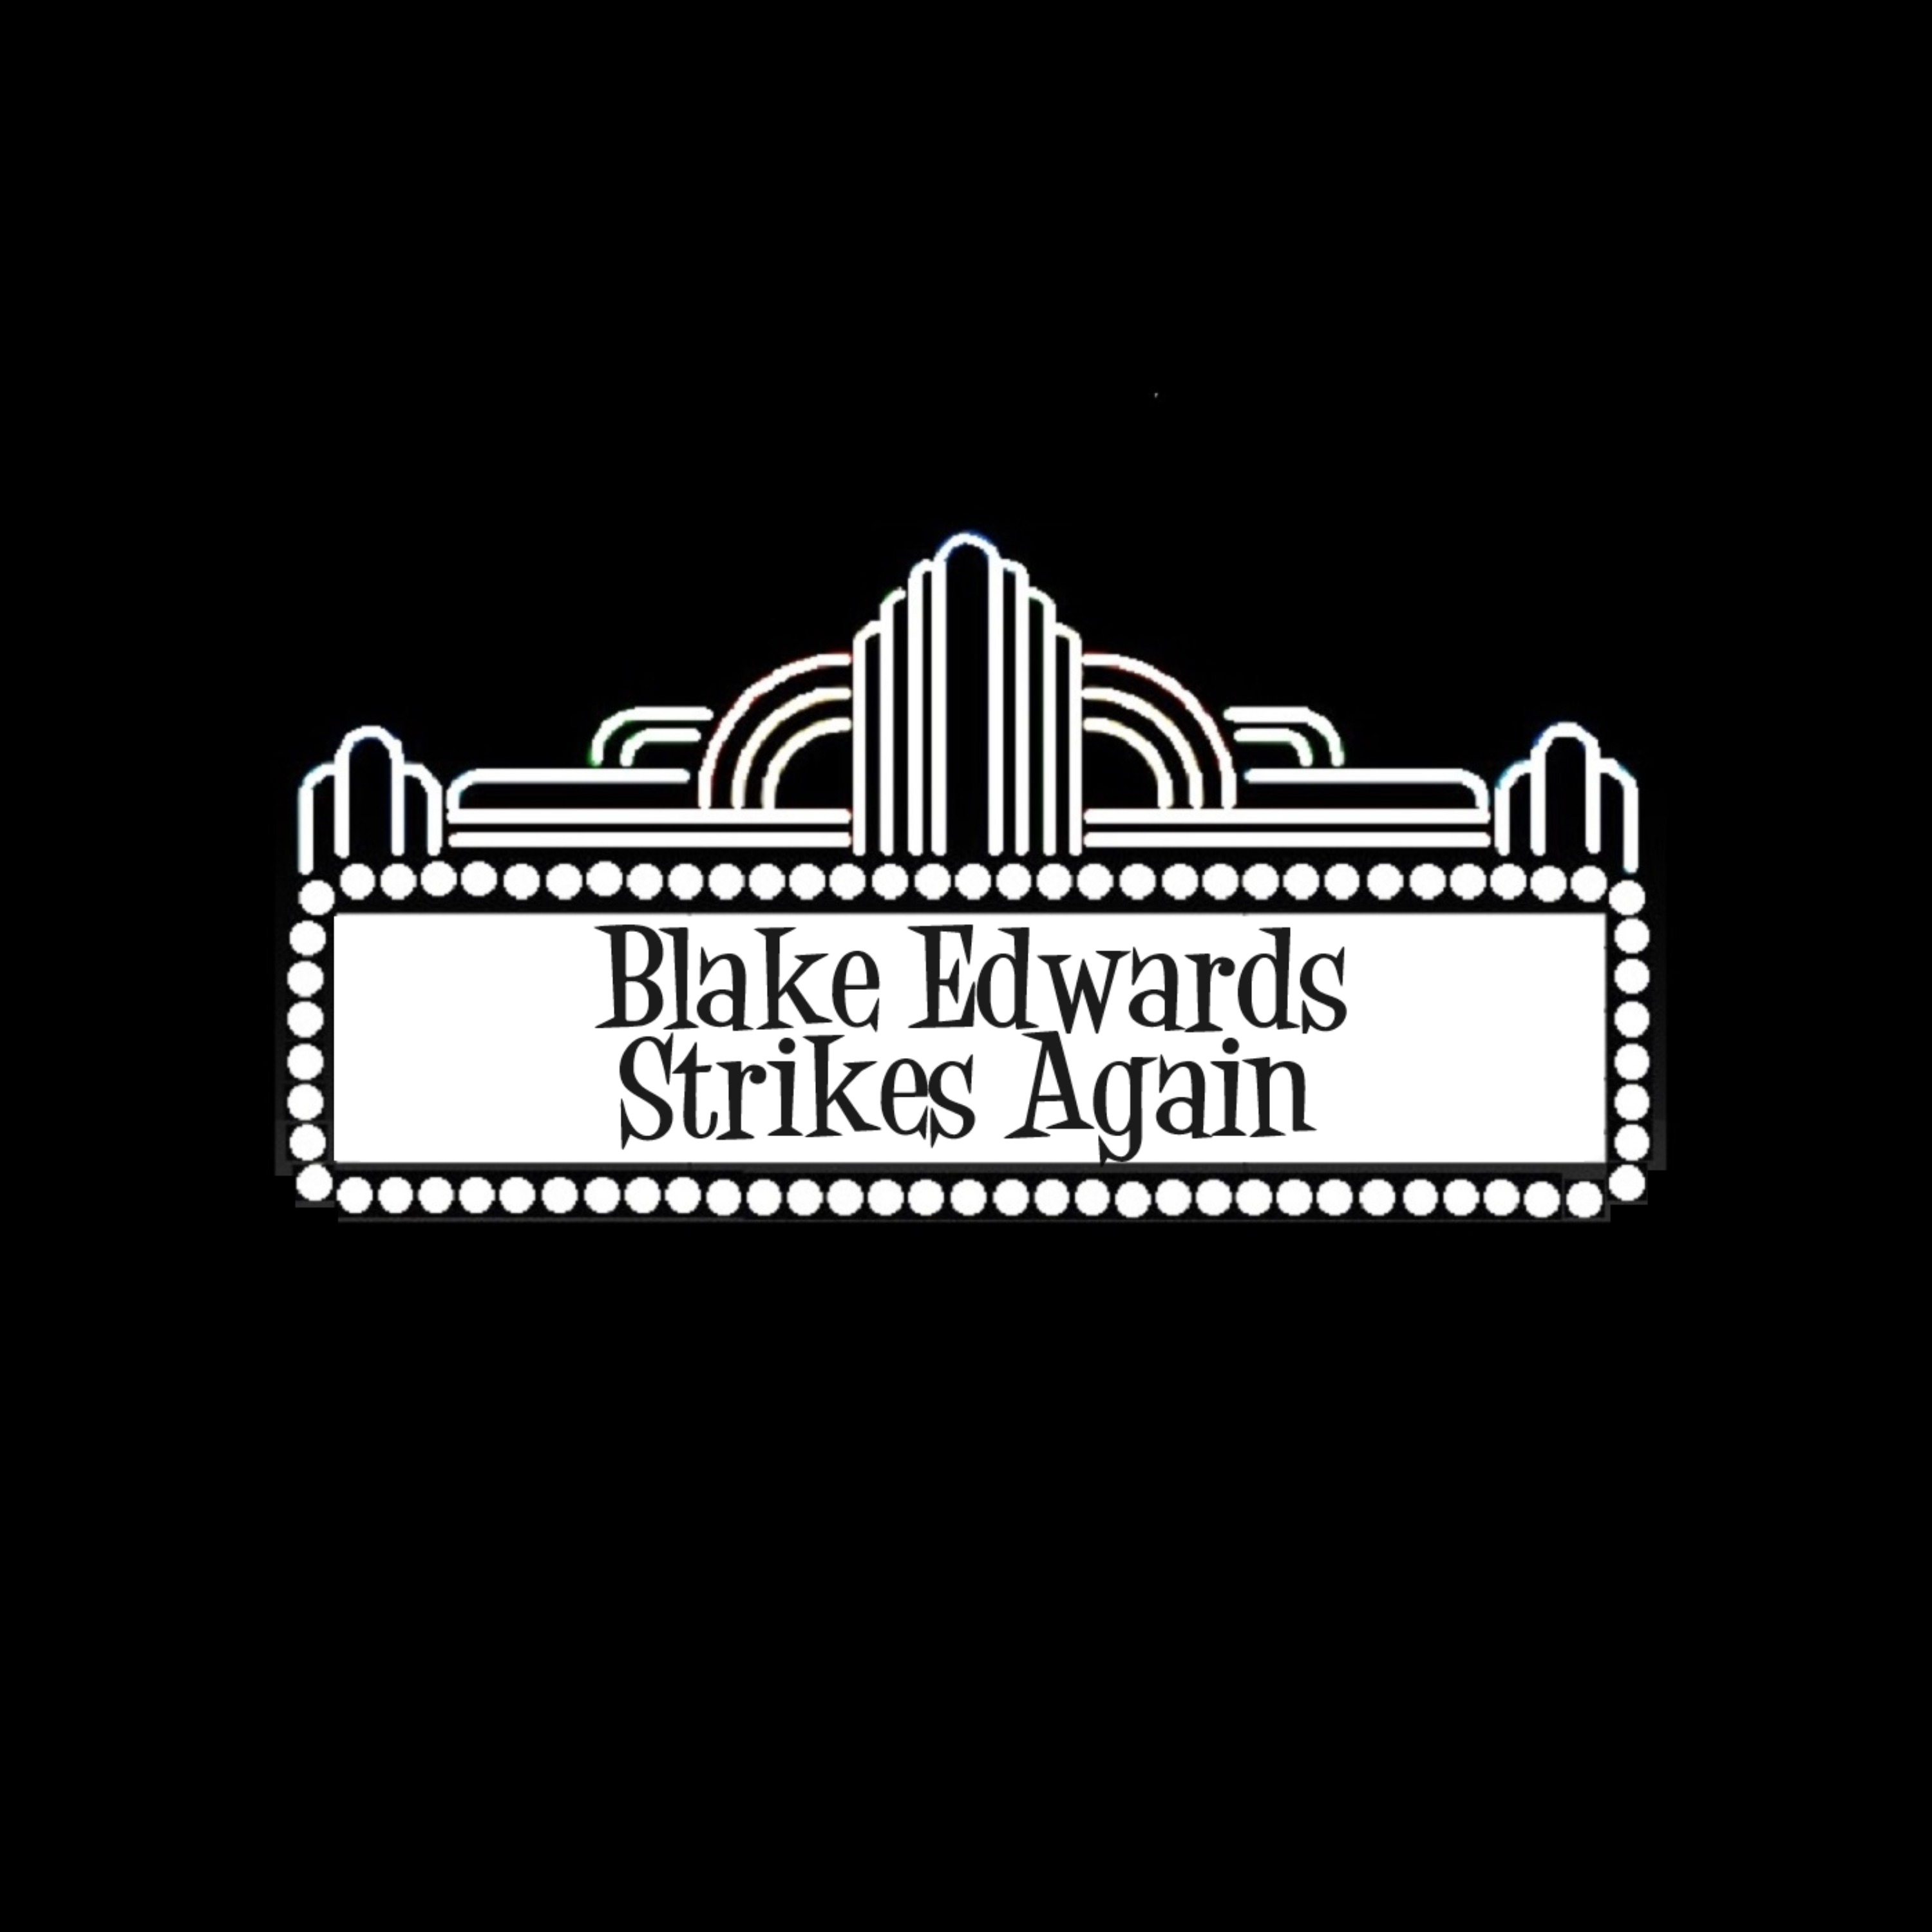 Blake Edwards Strikes Again